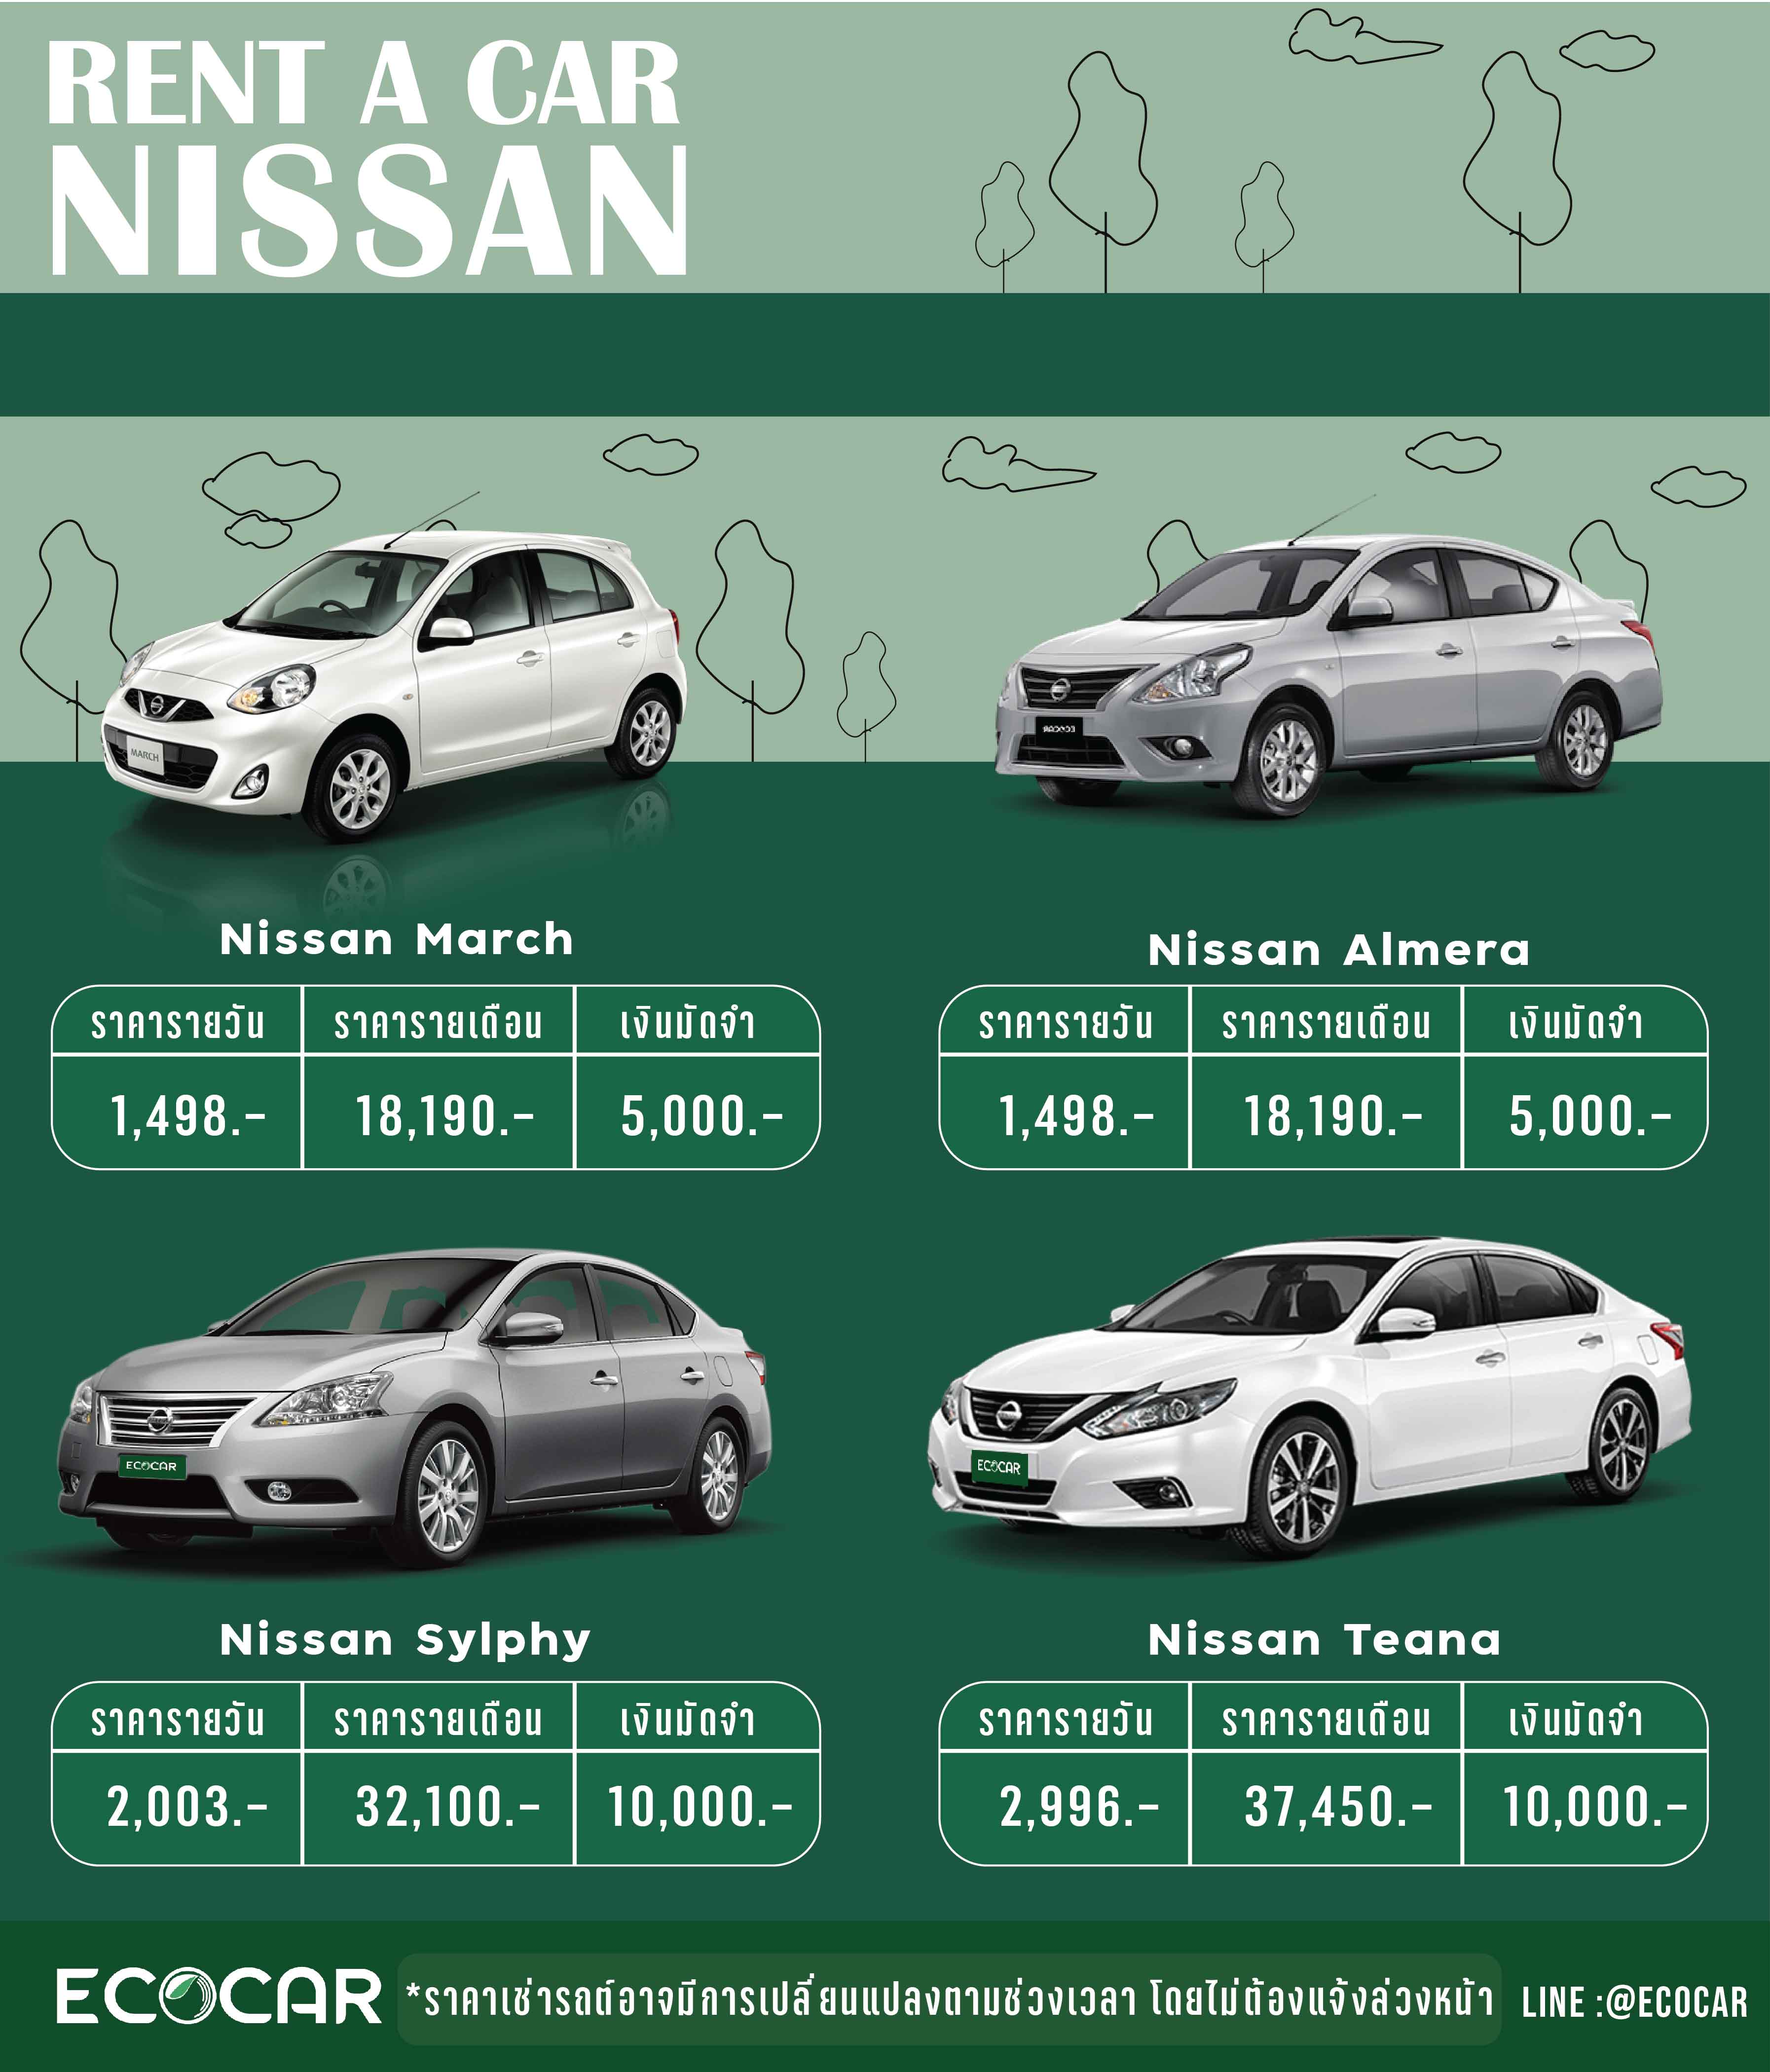 เช็คด่วน ราคาเช่ารถยนต์ ได้ที่นี่ ราคาถูก 749 บาท | ECOCAR rent-a-car